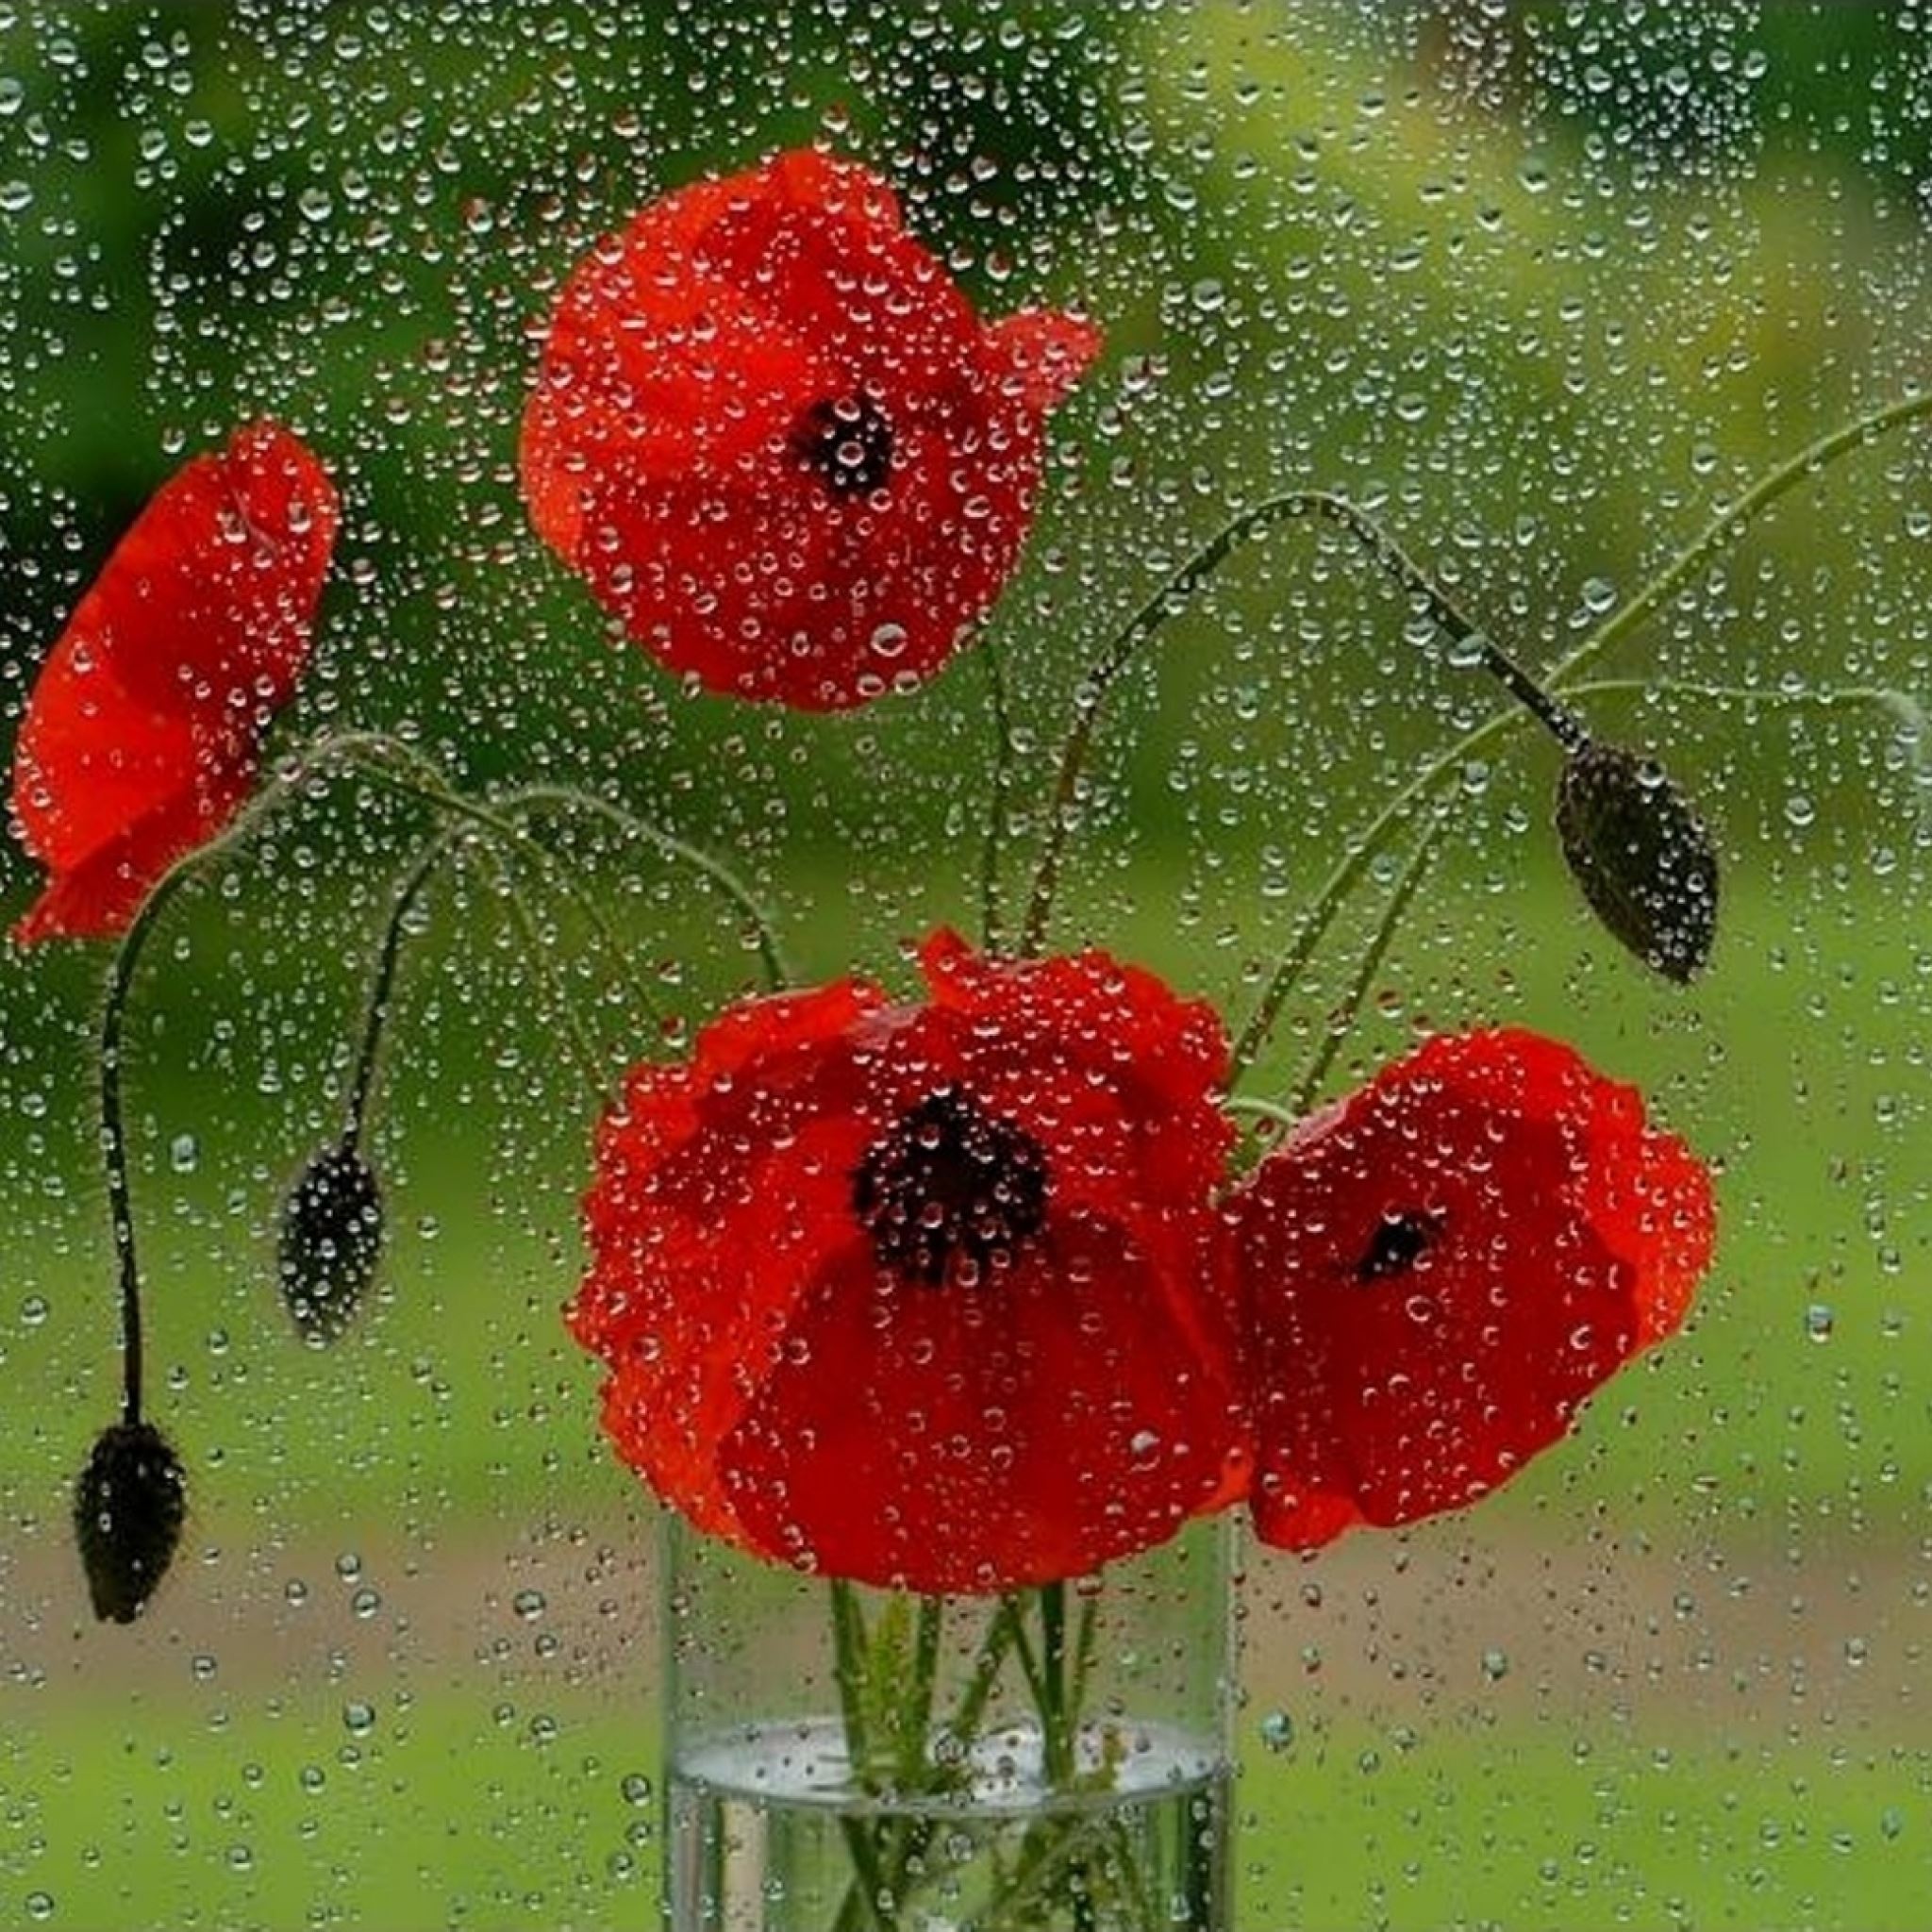 raining on flowers wallpaper